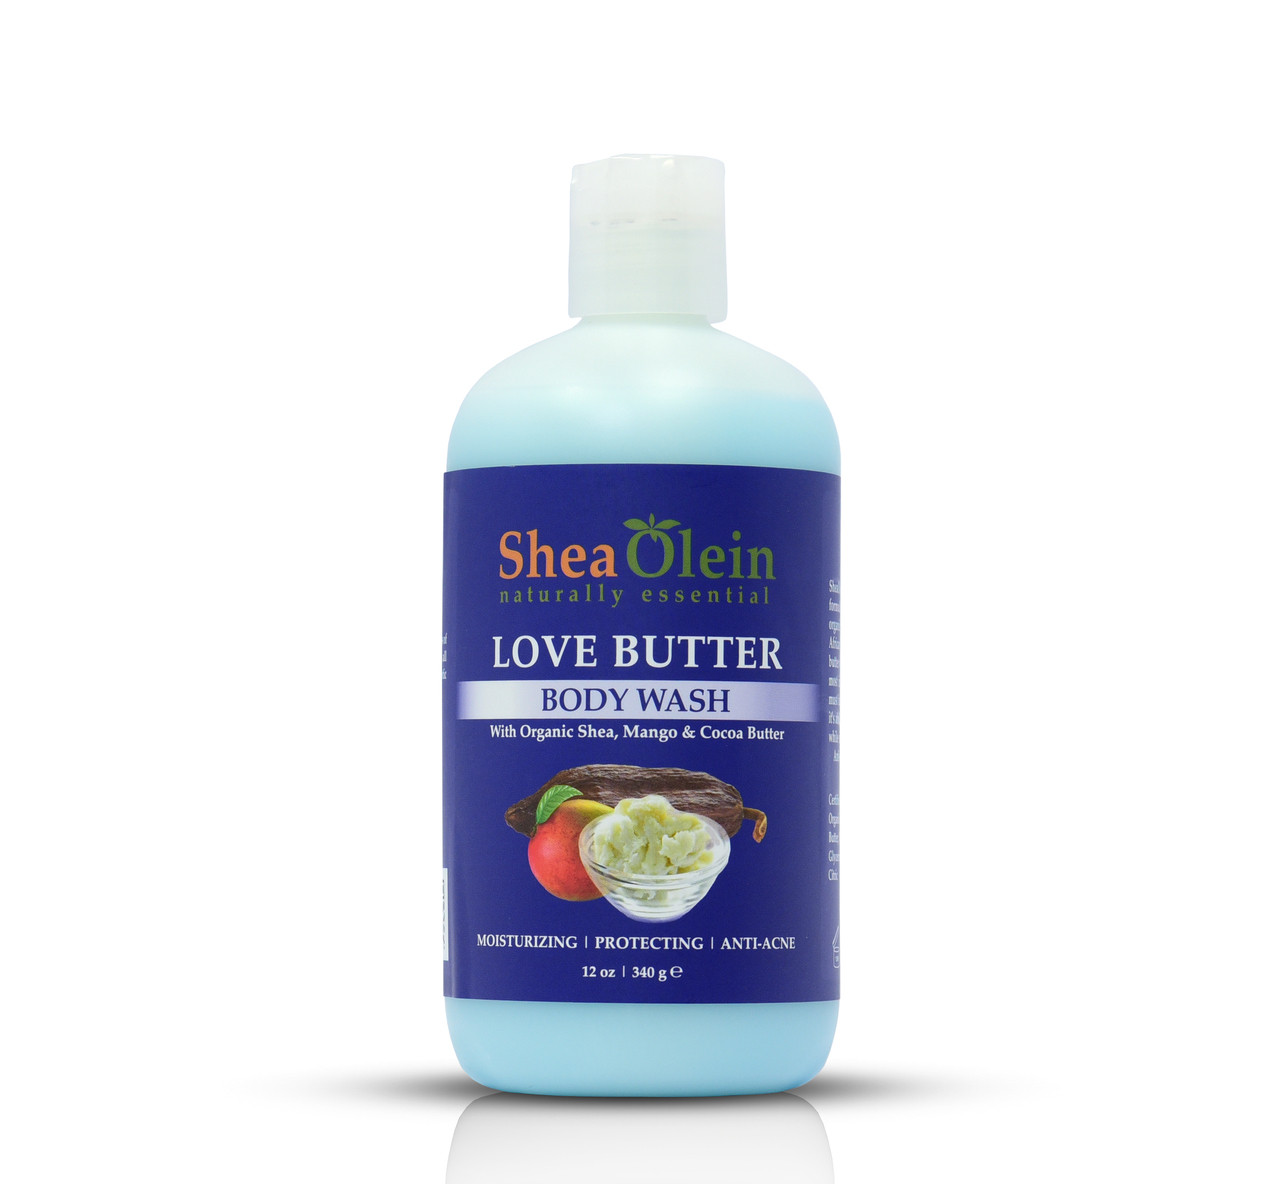 Shea Olein Love Butter Body Wash